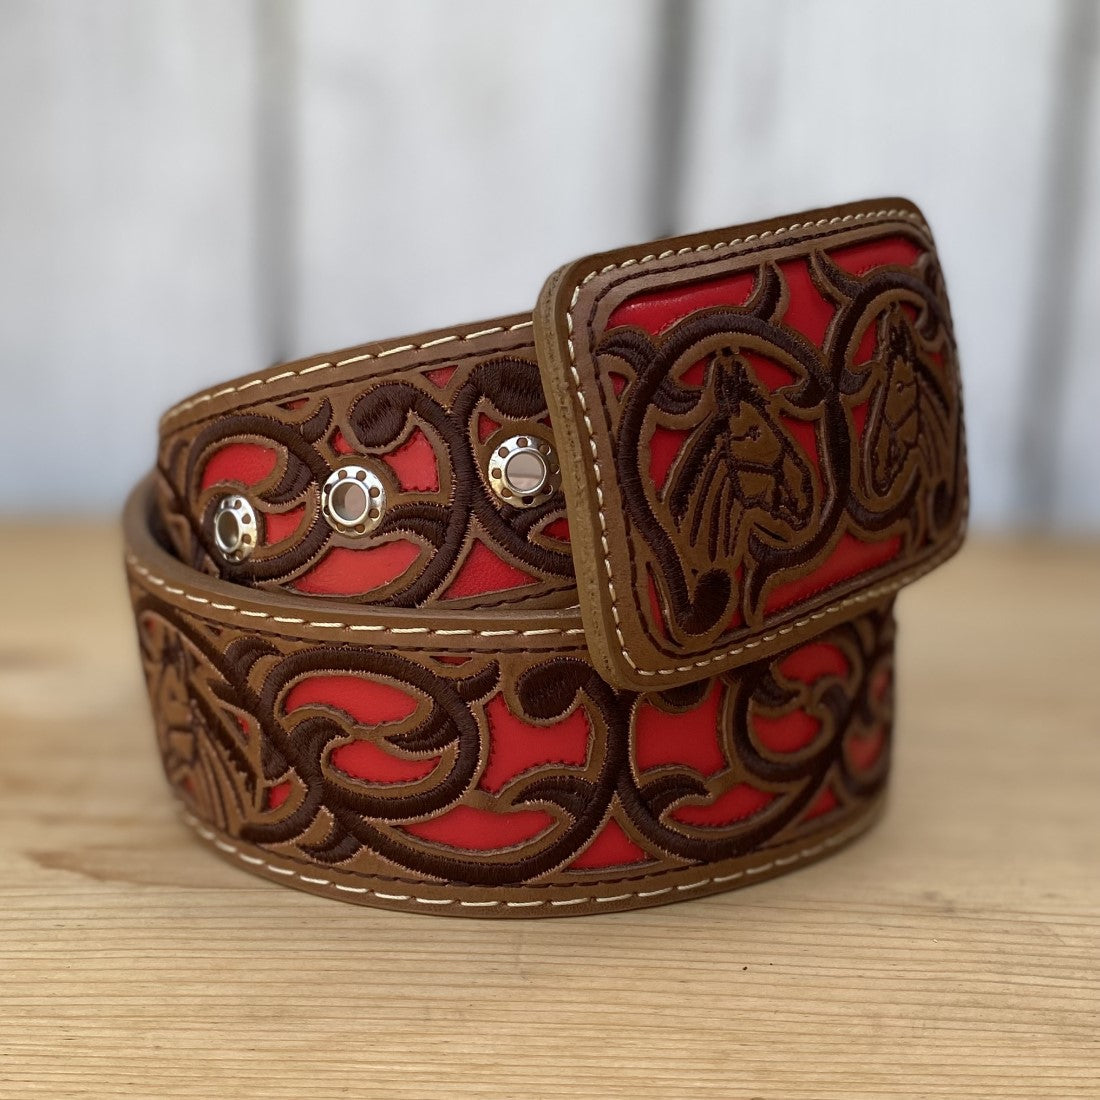 Cinturon Mexicano Vaquero - CB-Vaquero Rojo - Cinturon Vaquero Bordado para Mujer - Cinturones para Mujer Bordados 